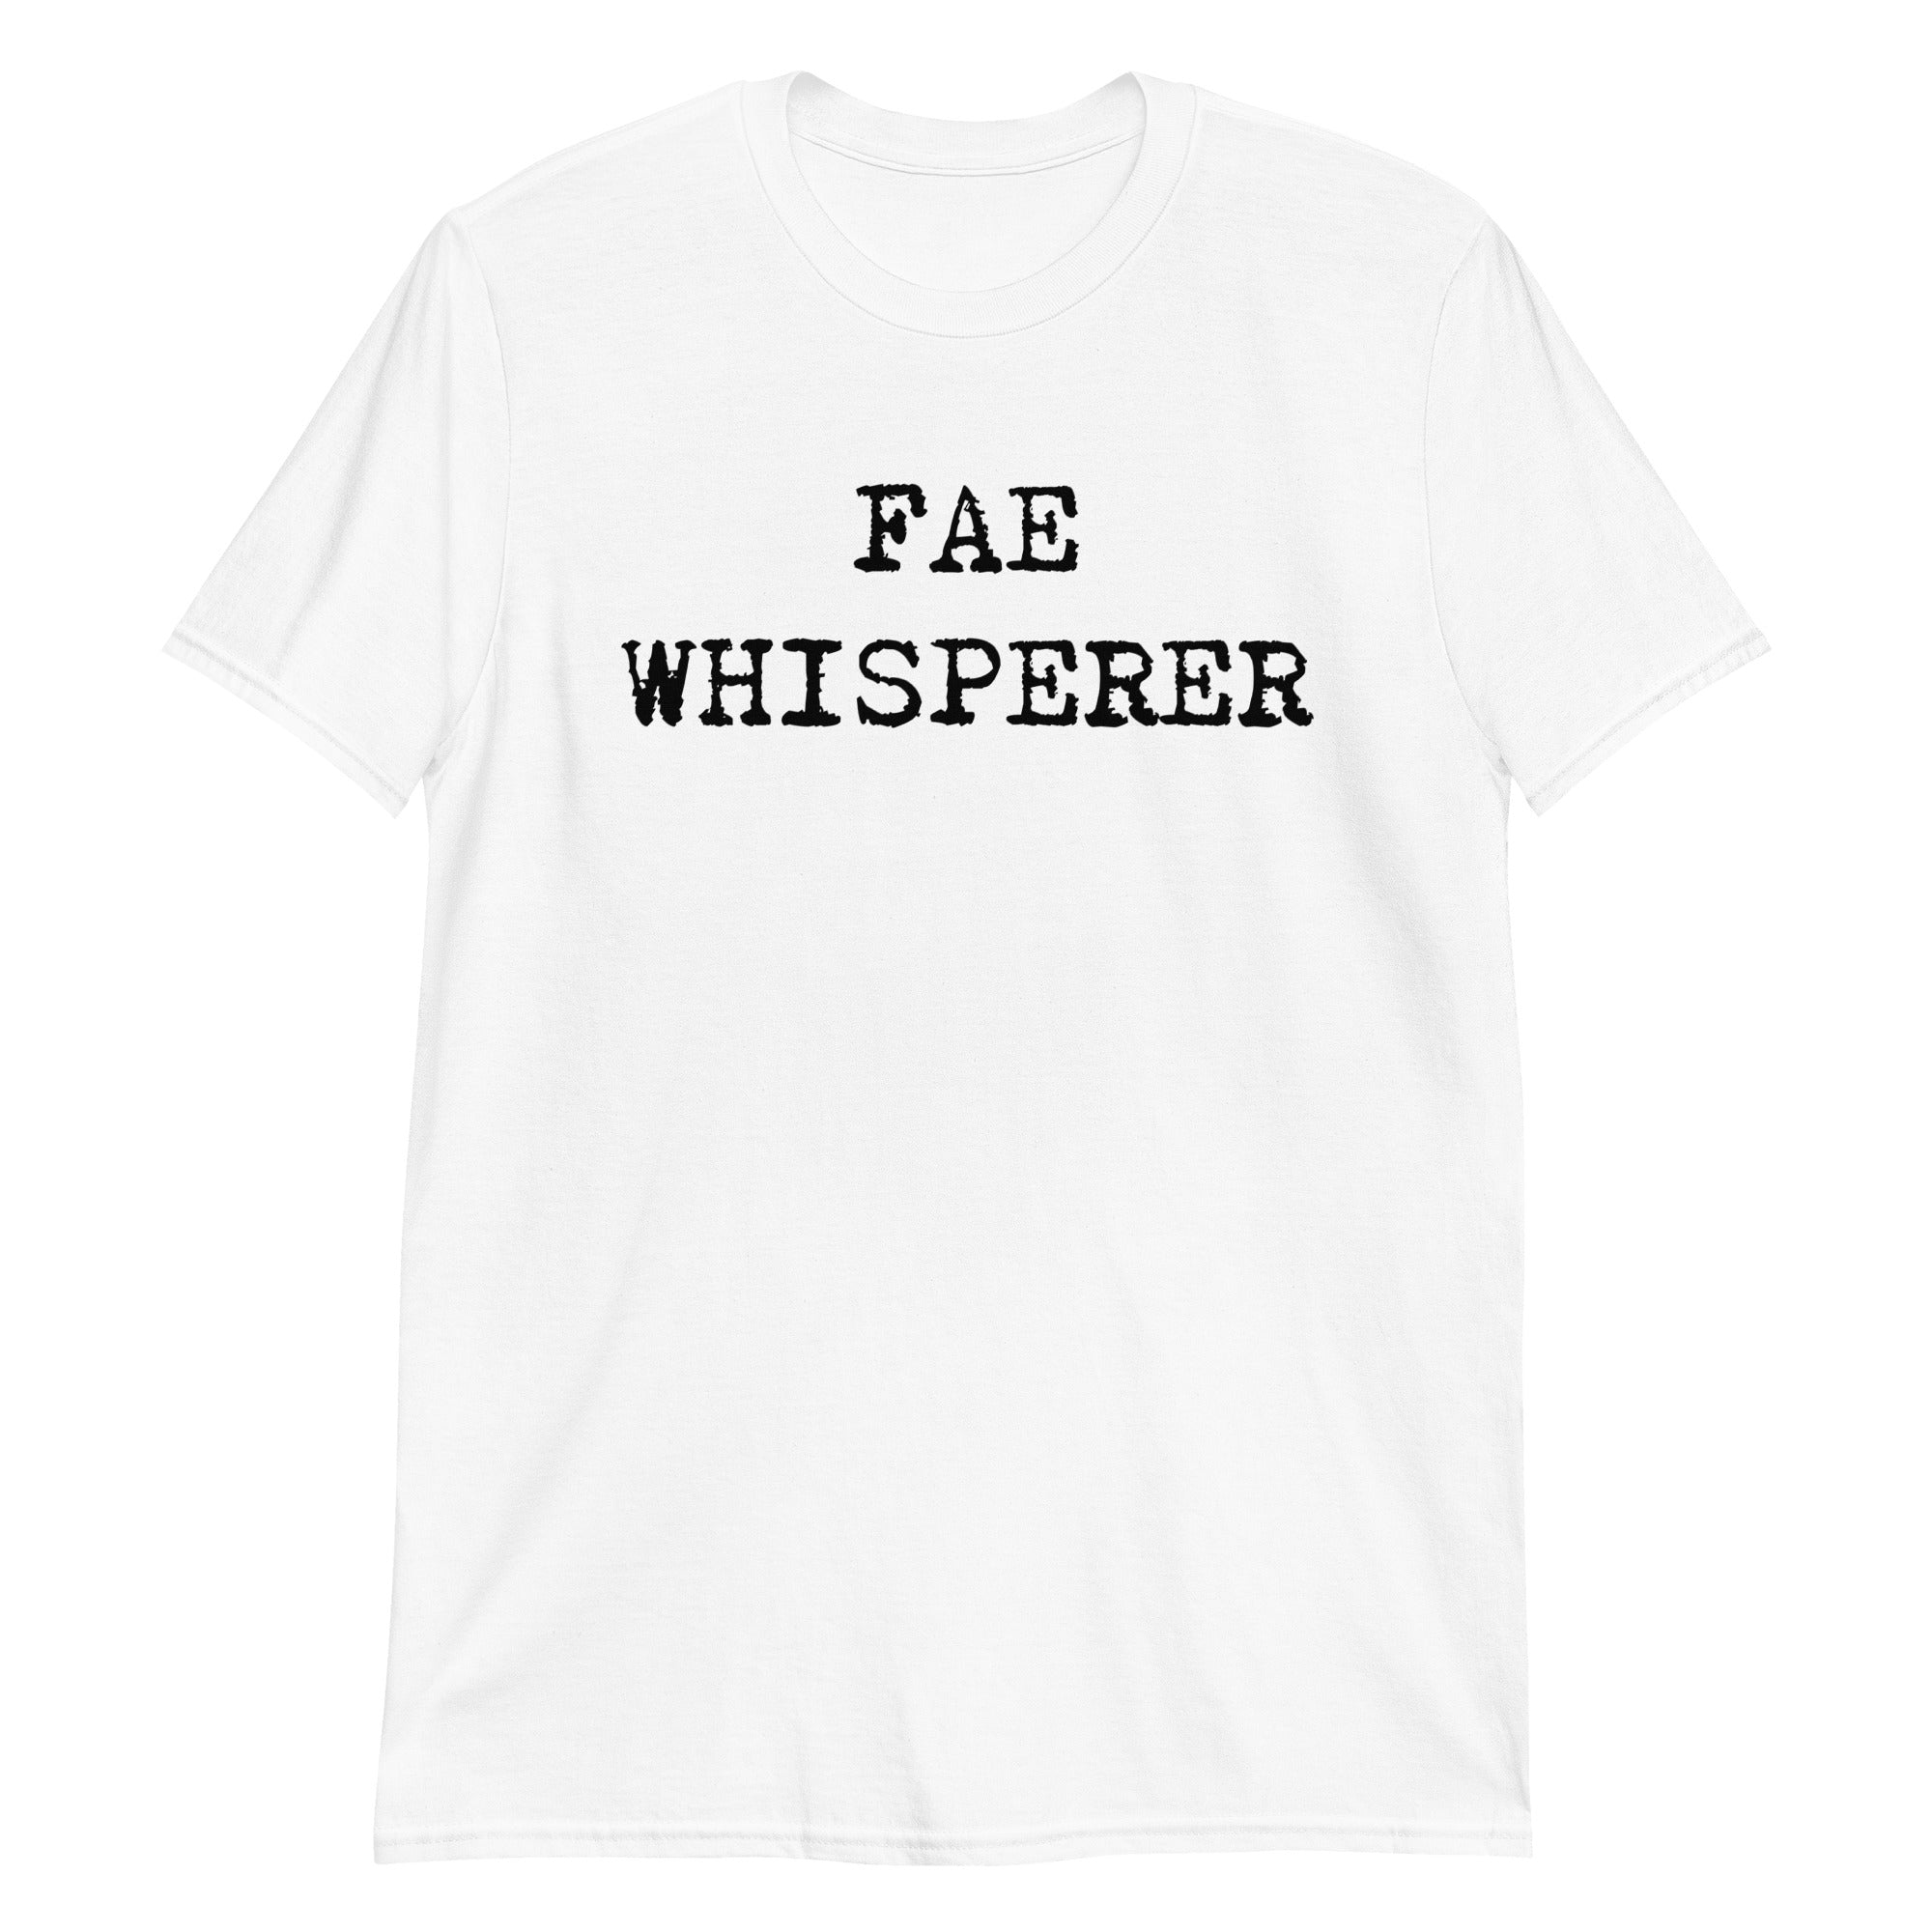 Fae Whisperer T-Shirt by Faith Streng | White